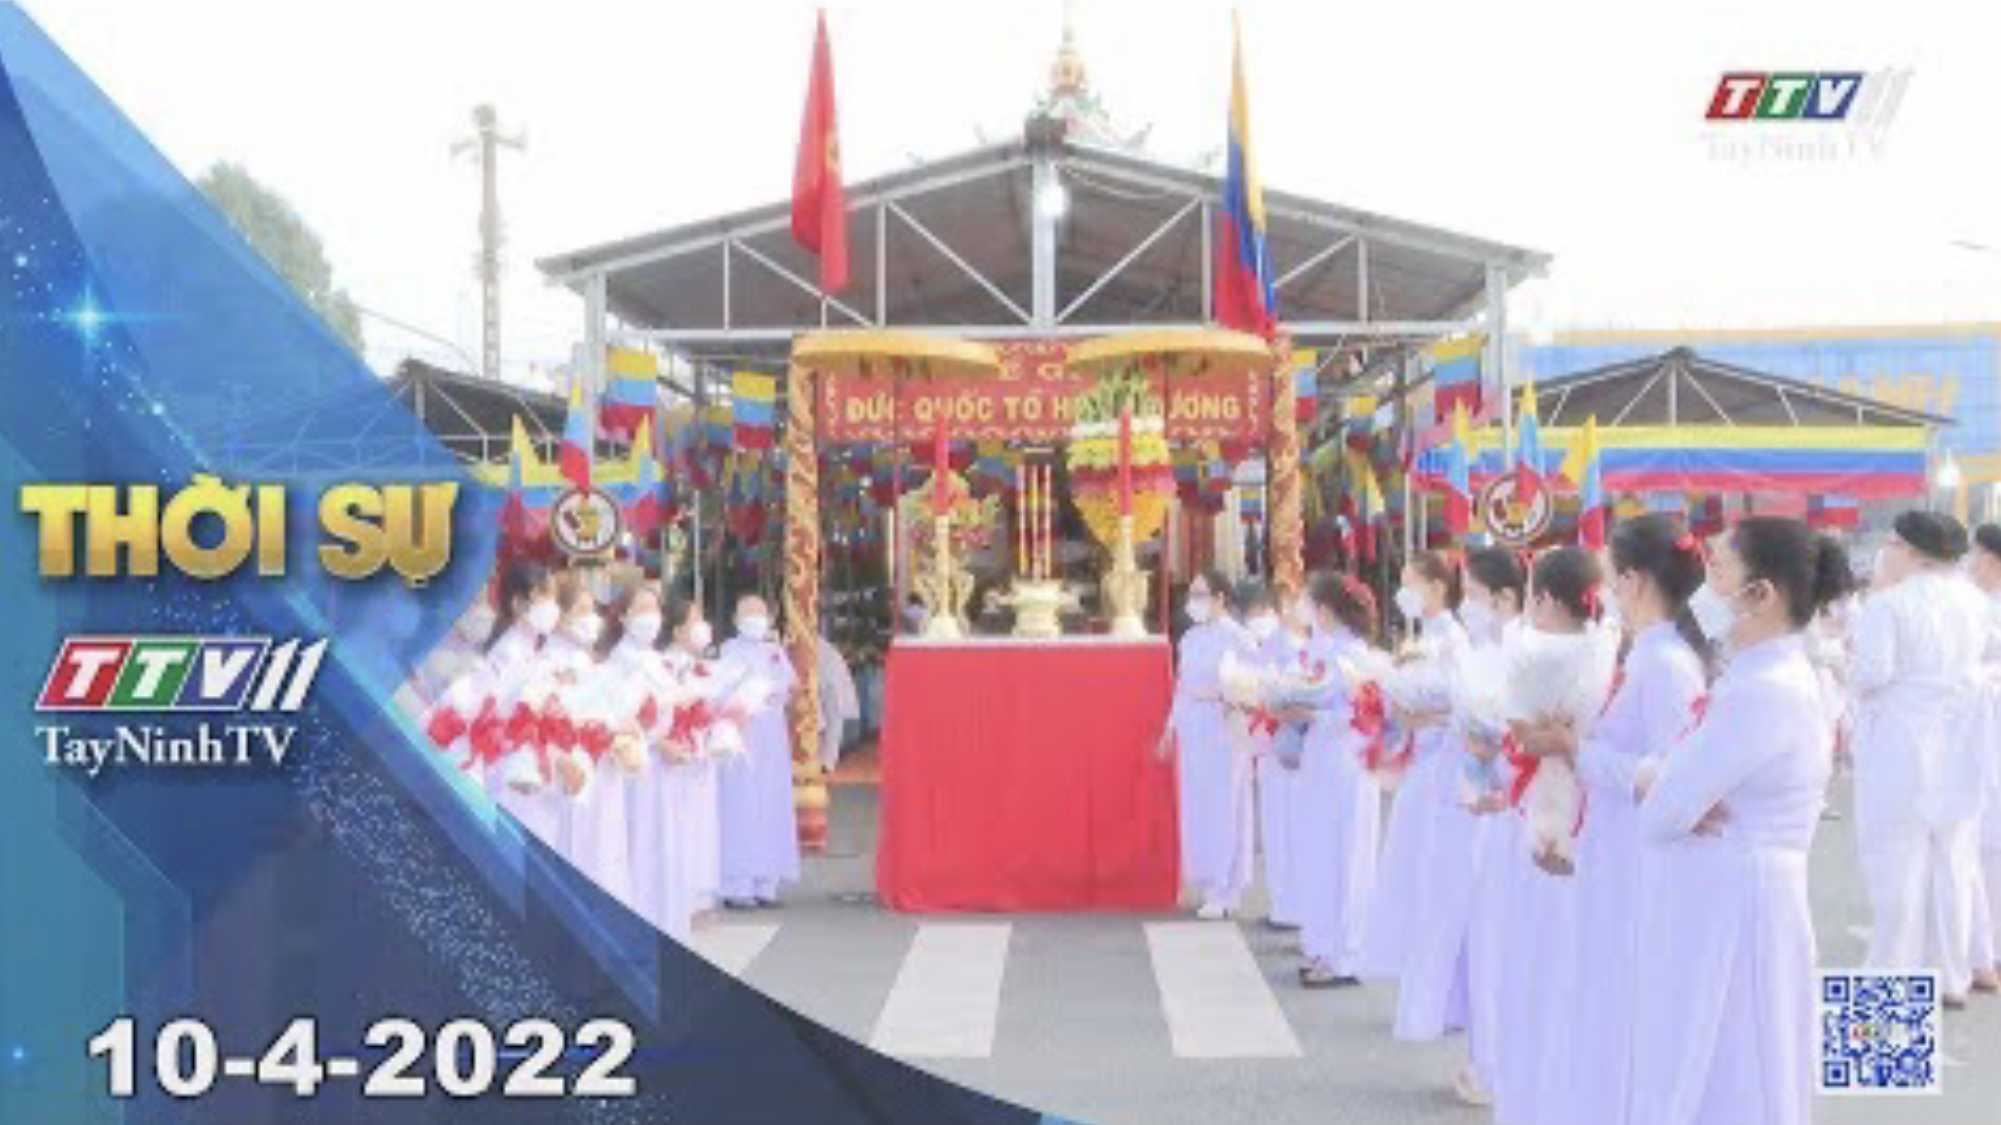 Thời sự Tây Ninh 10-4-2022 | Tin tức hôm nay | TayNinhTV